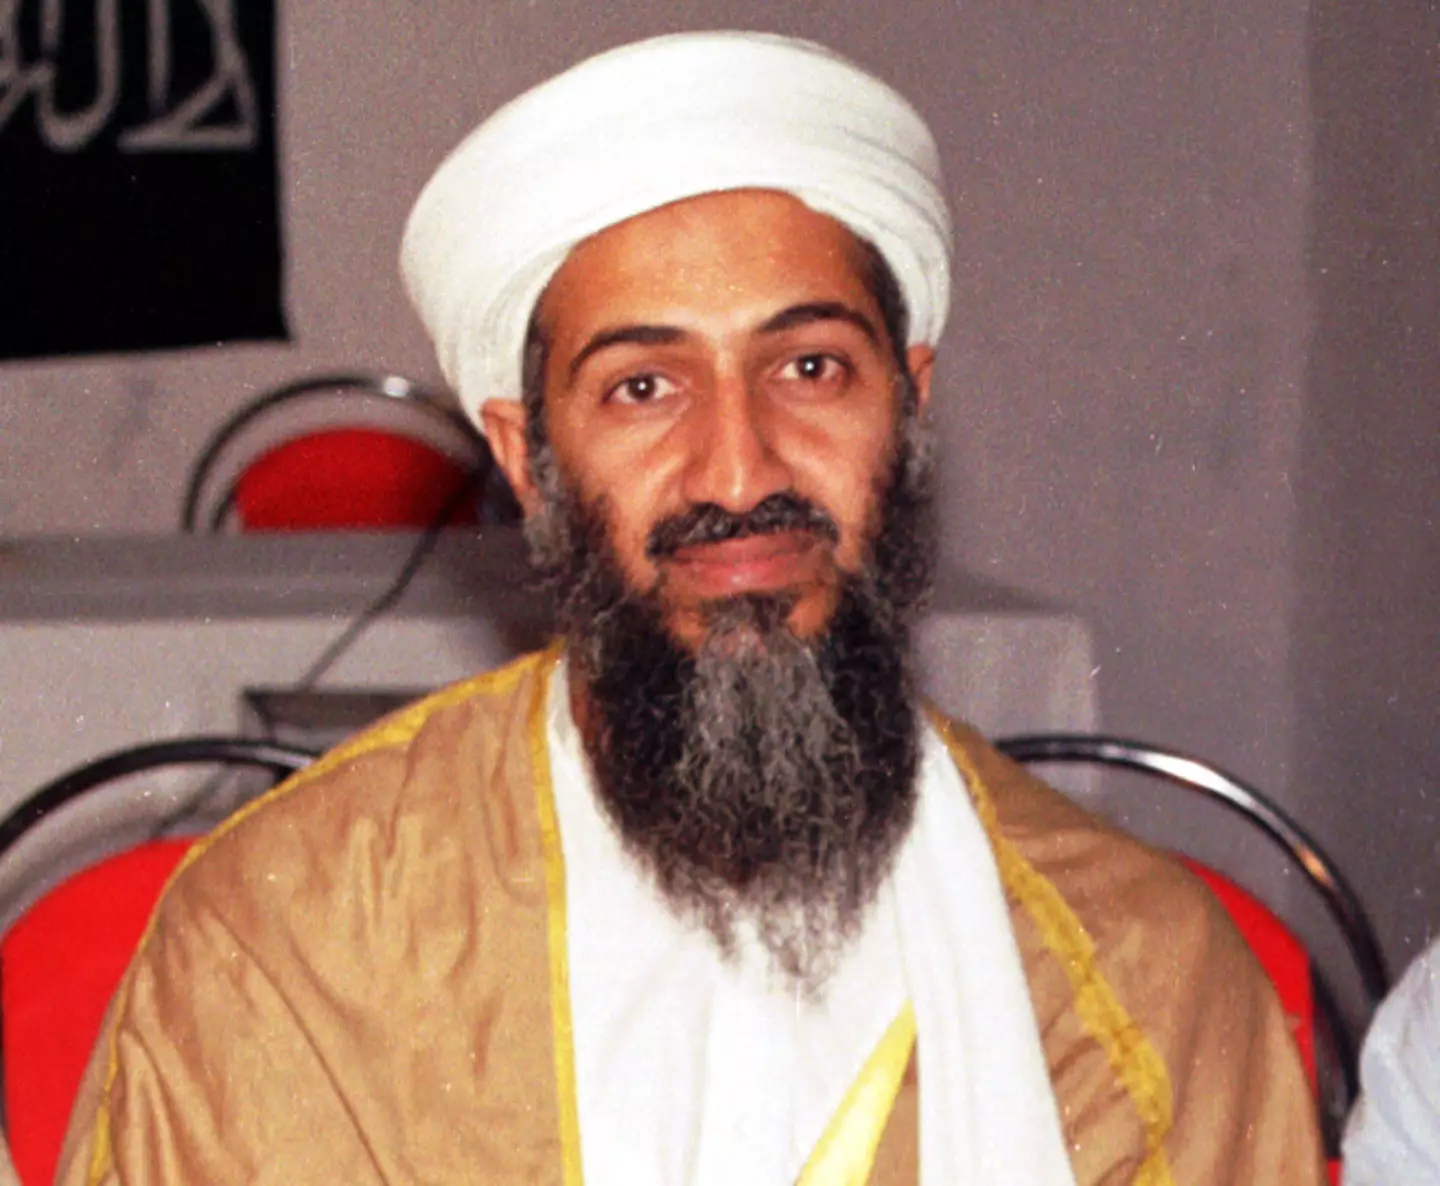 Osama bin Laden was killed in 2011.